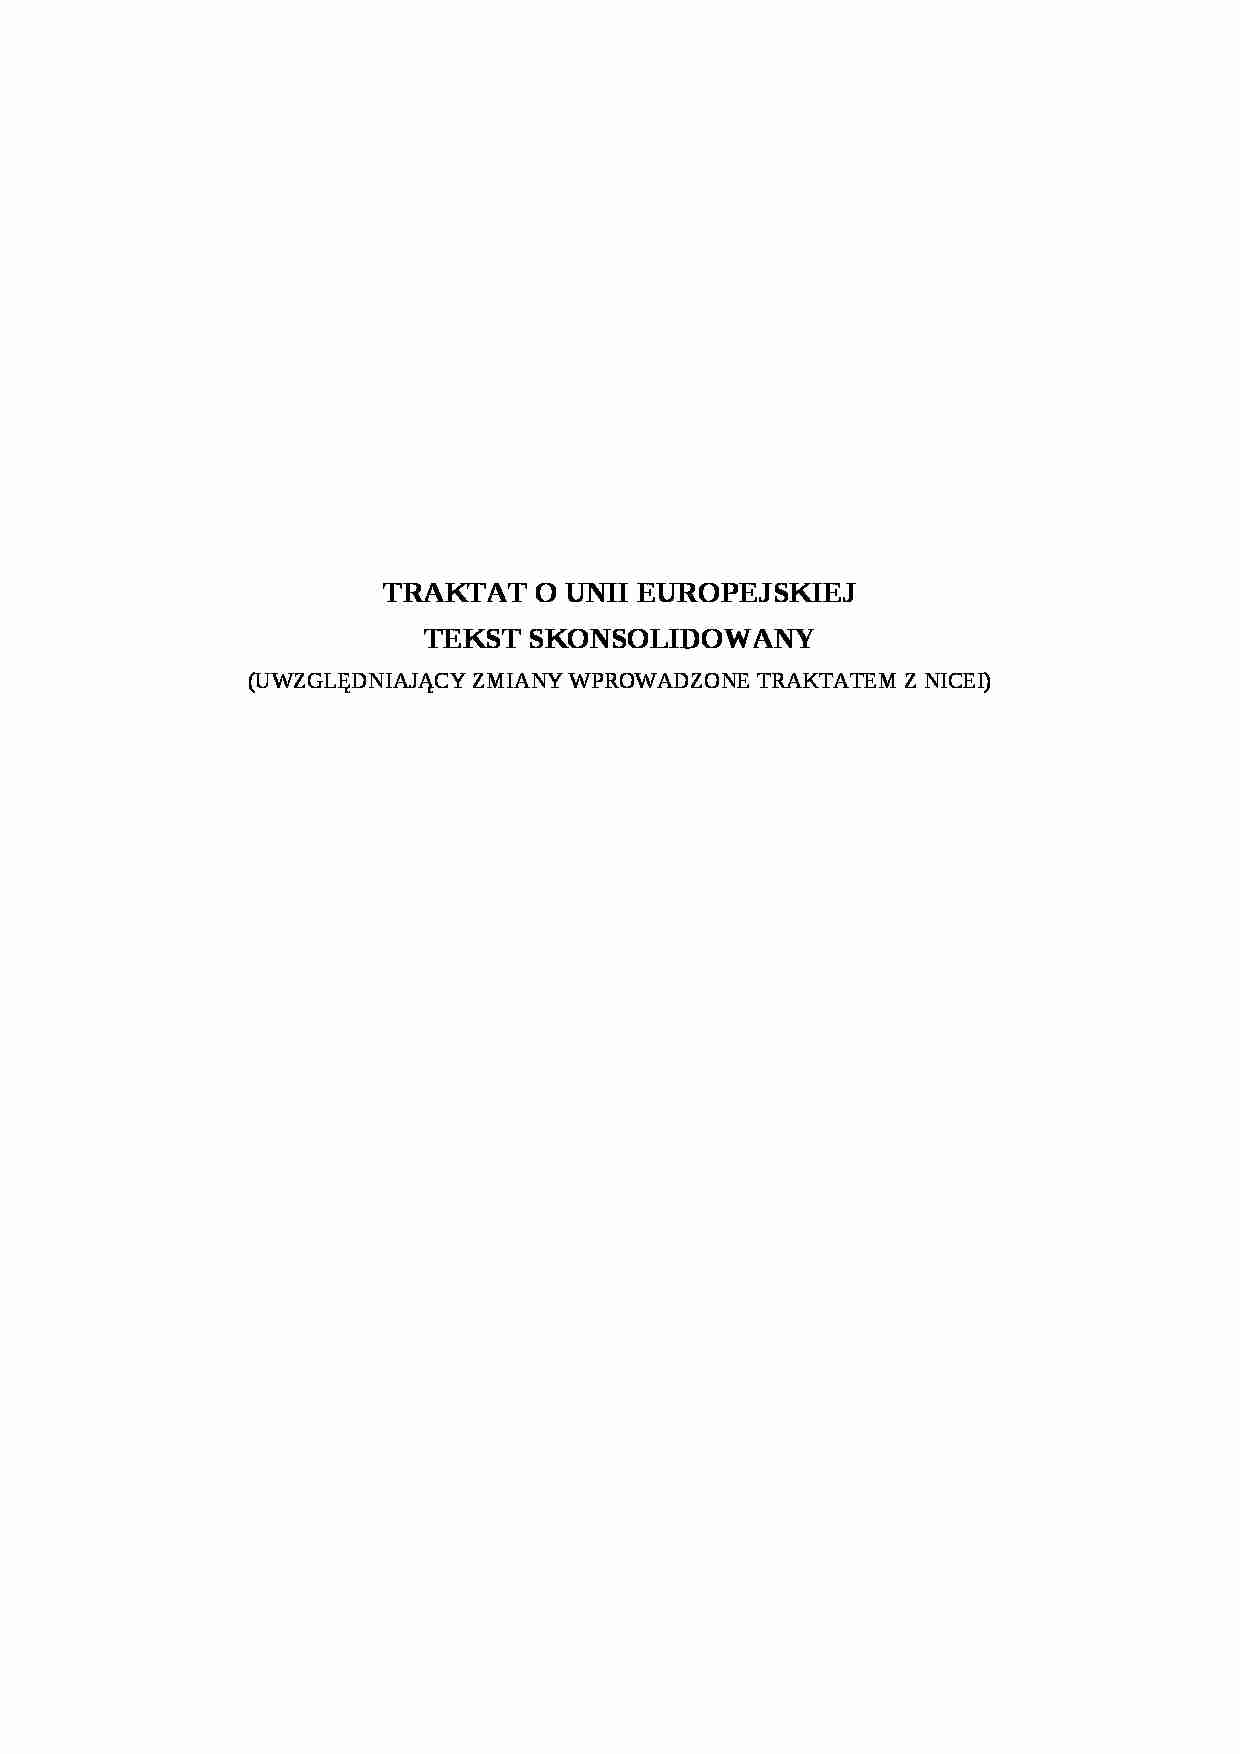 Traktat UE skonsolidowany - wykład - strona 1